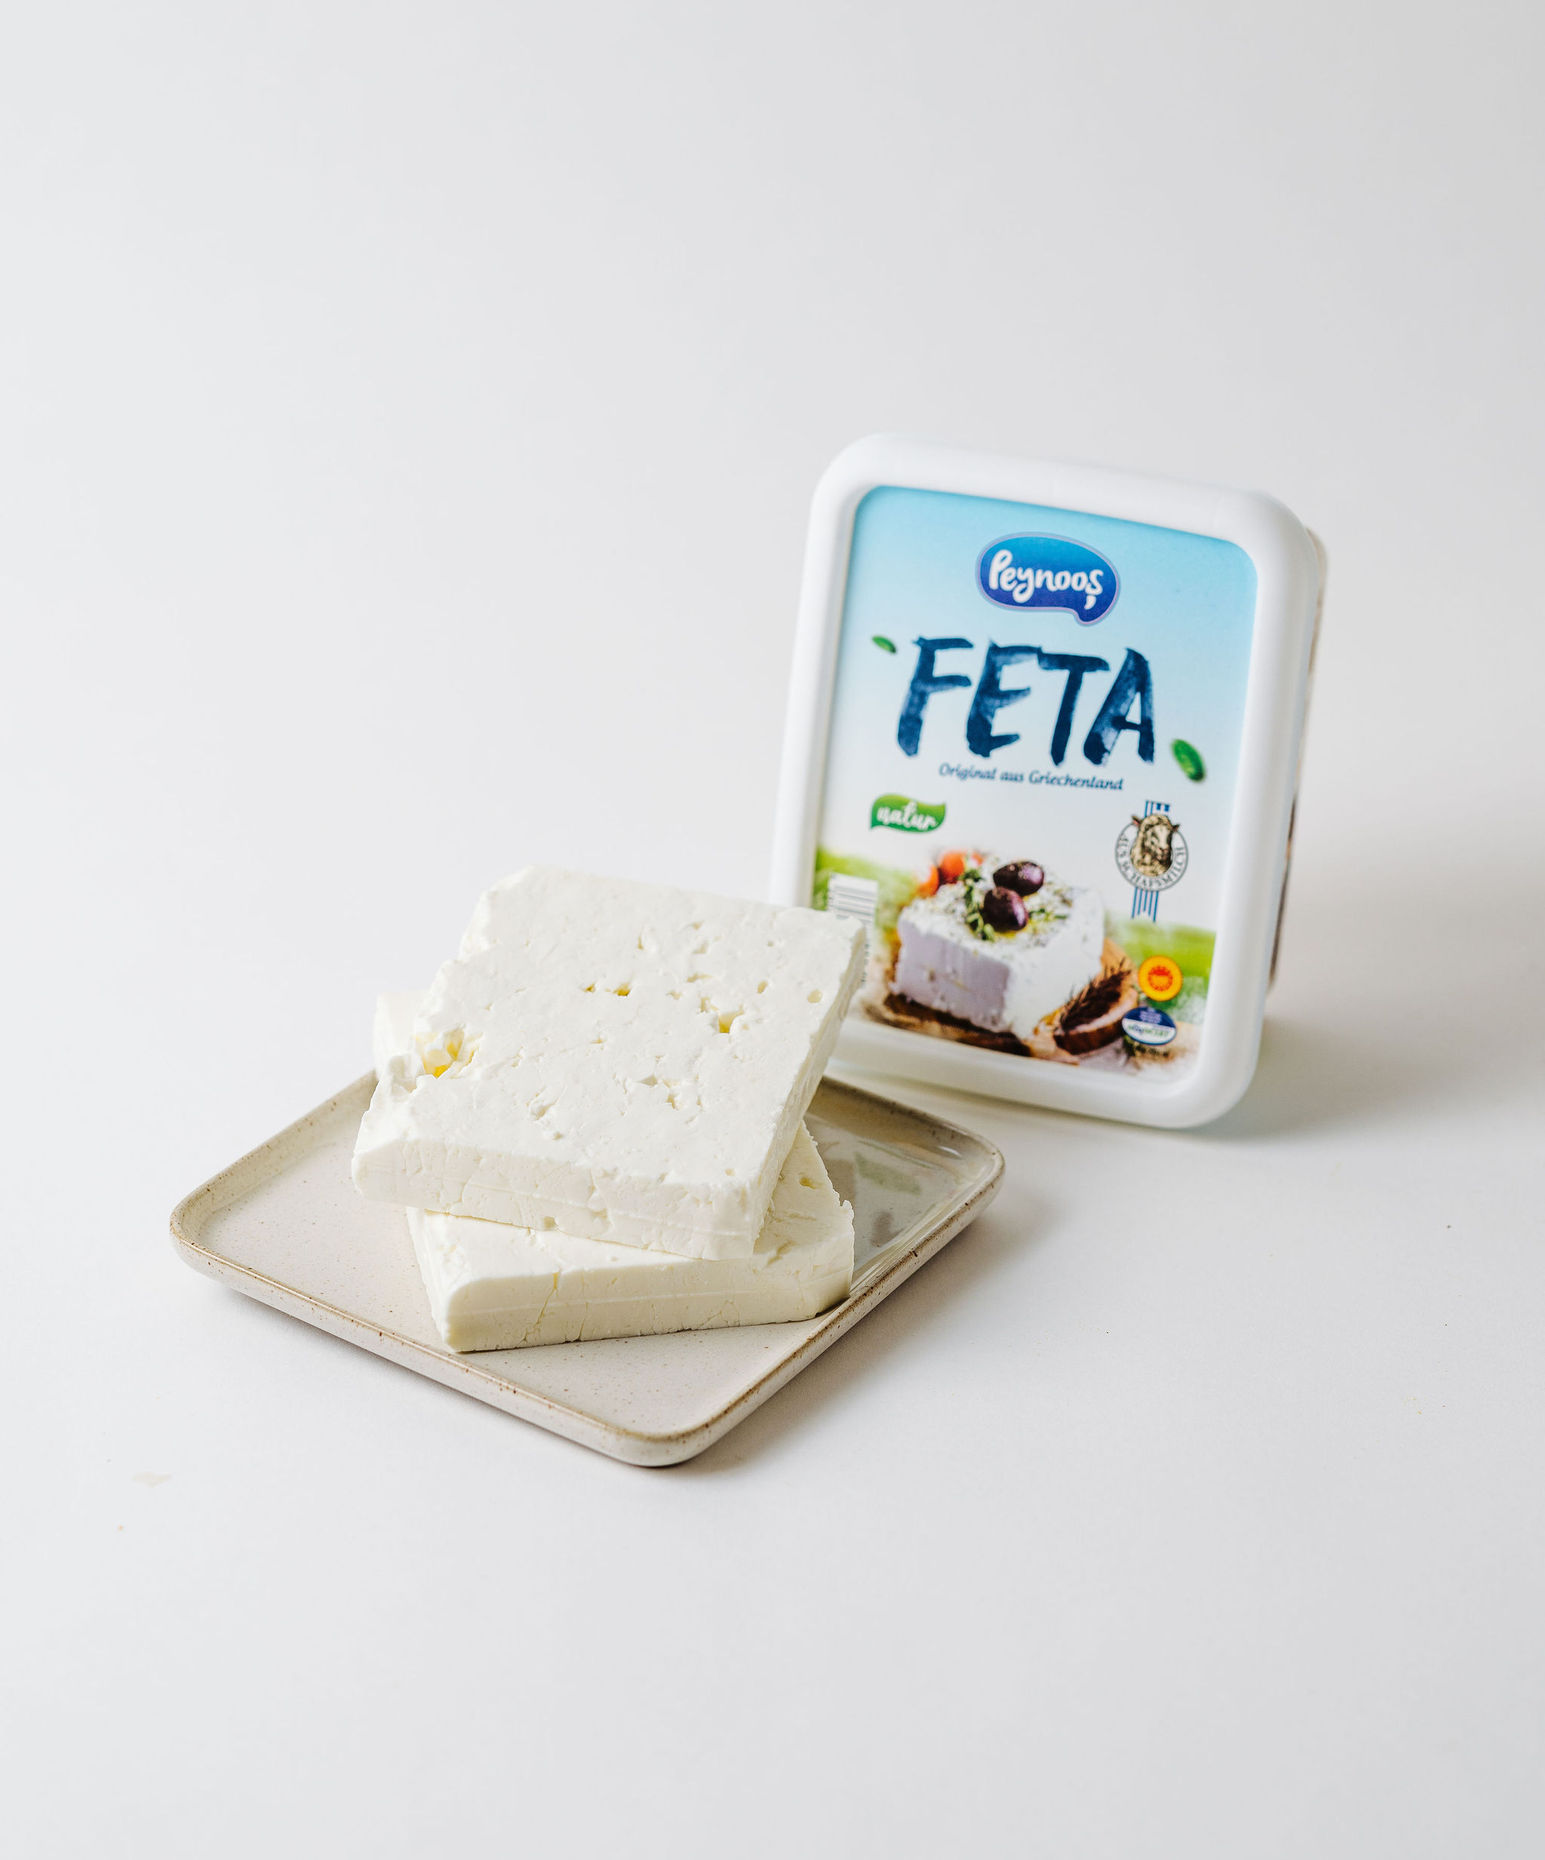 Peynoos Feta Cheese 